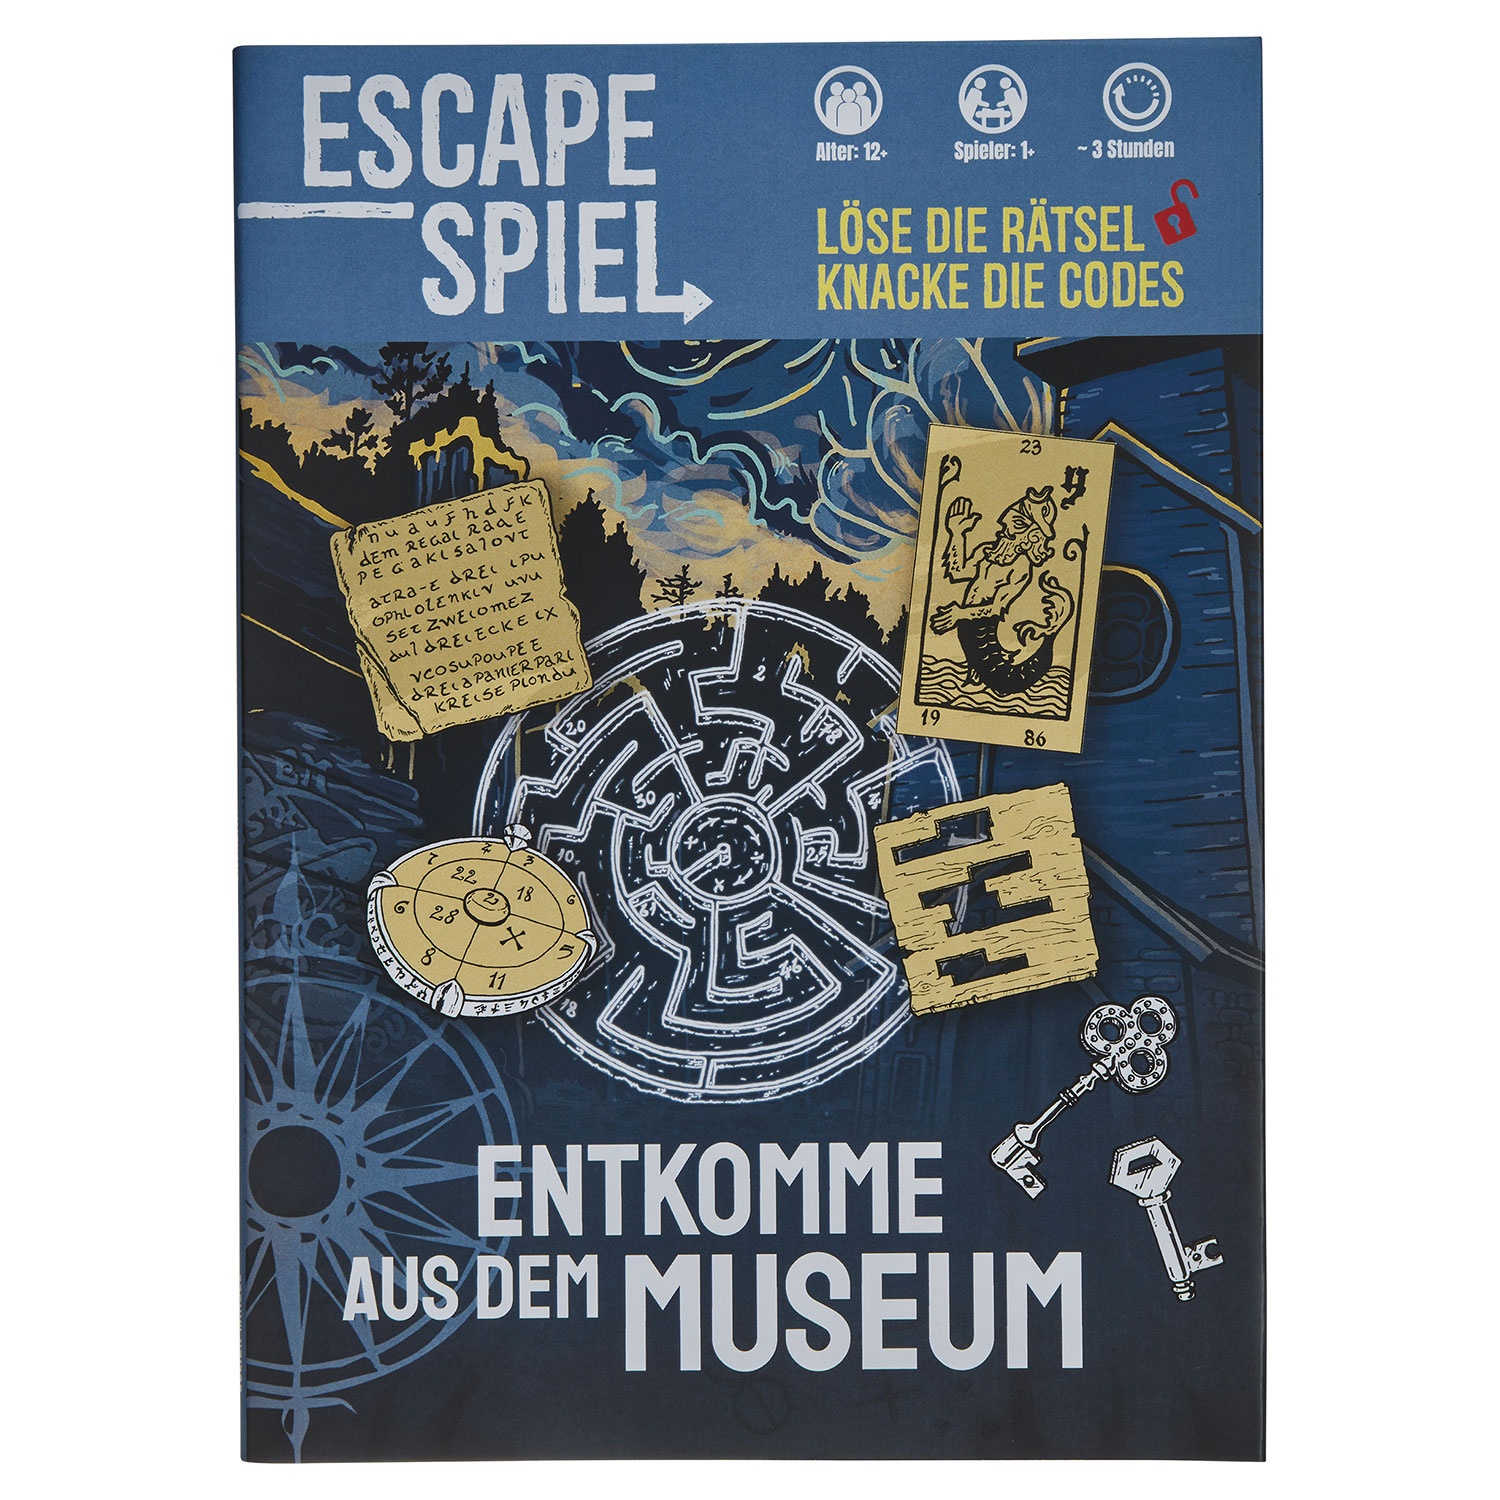 Rätselbuch oder Escape-Abenteuer